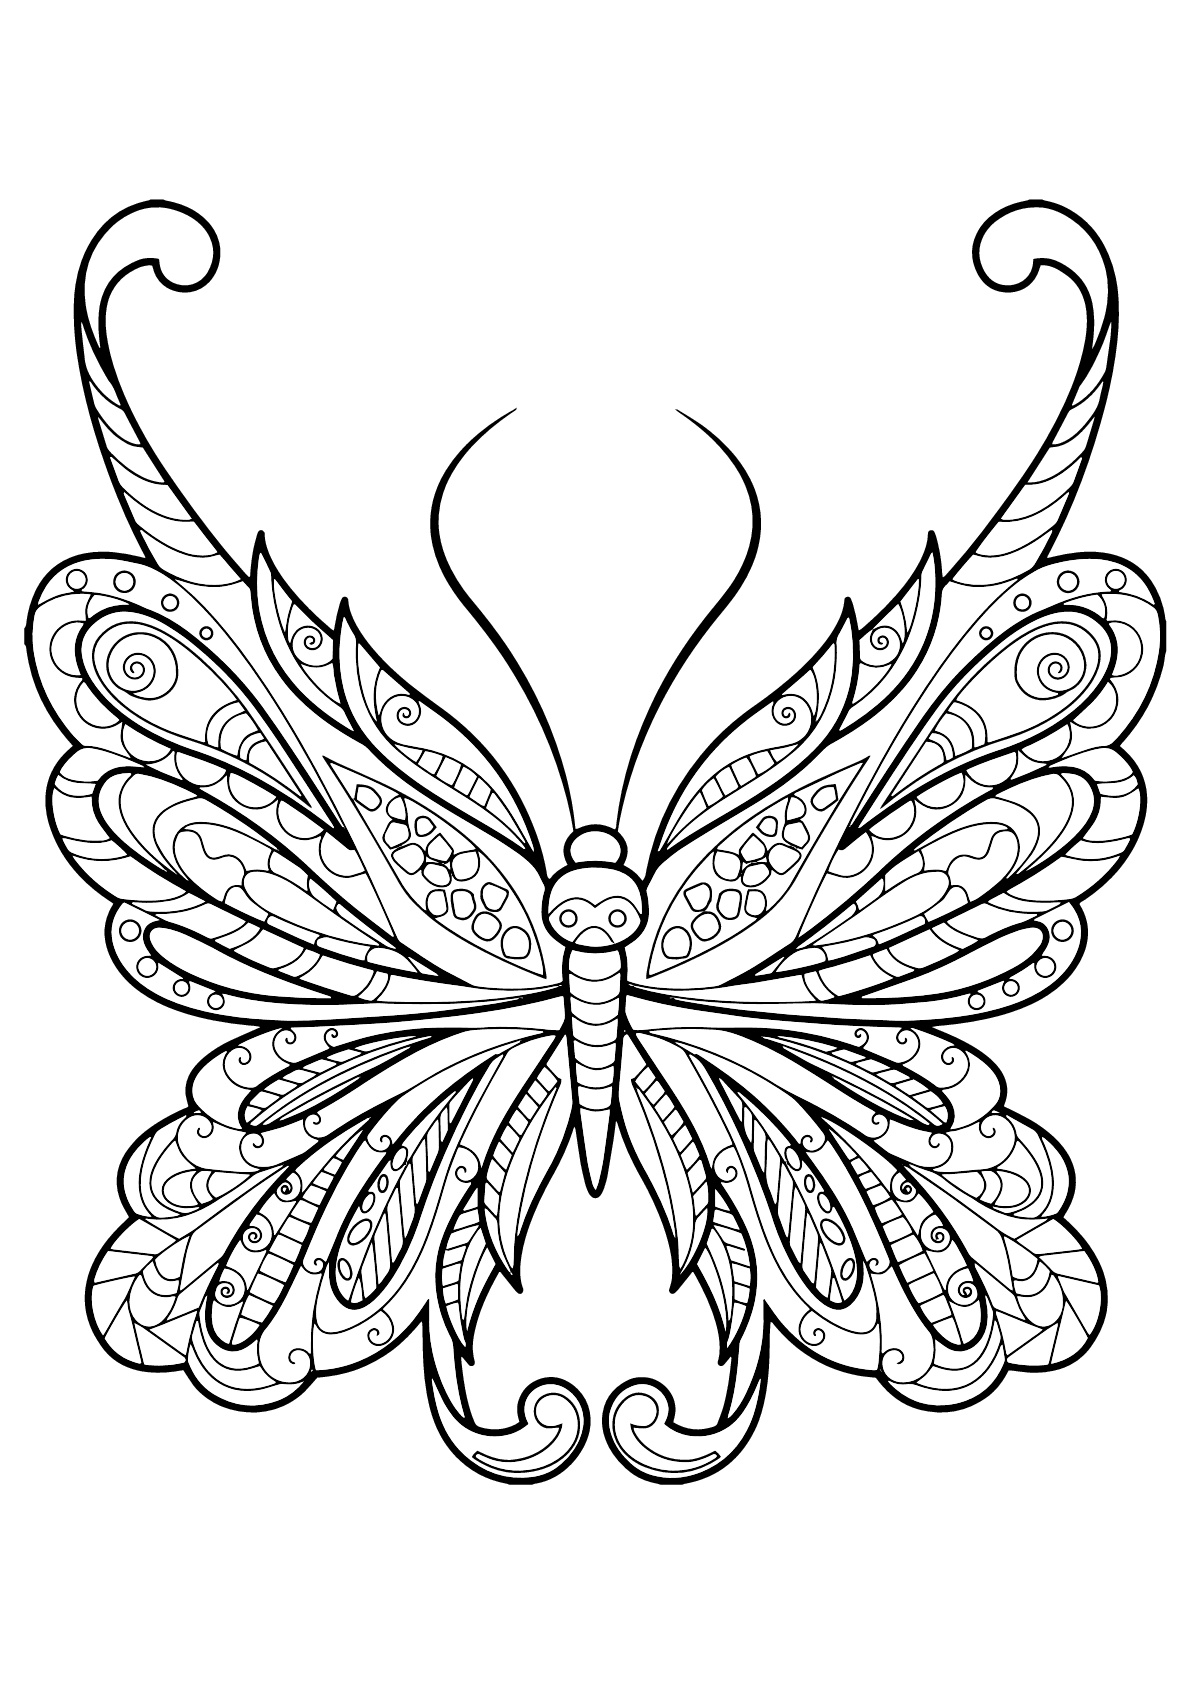 Mariposa con bellos e intrincados dibujos - 18